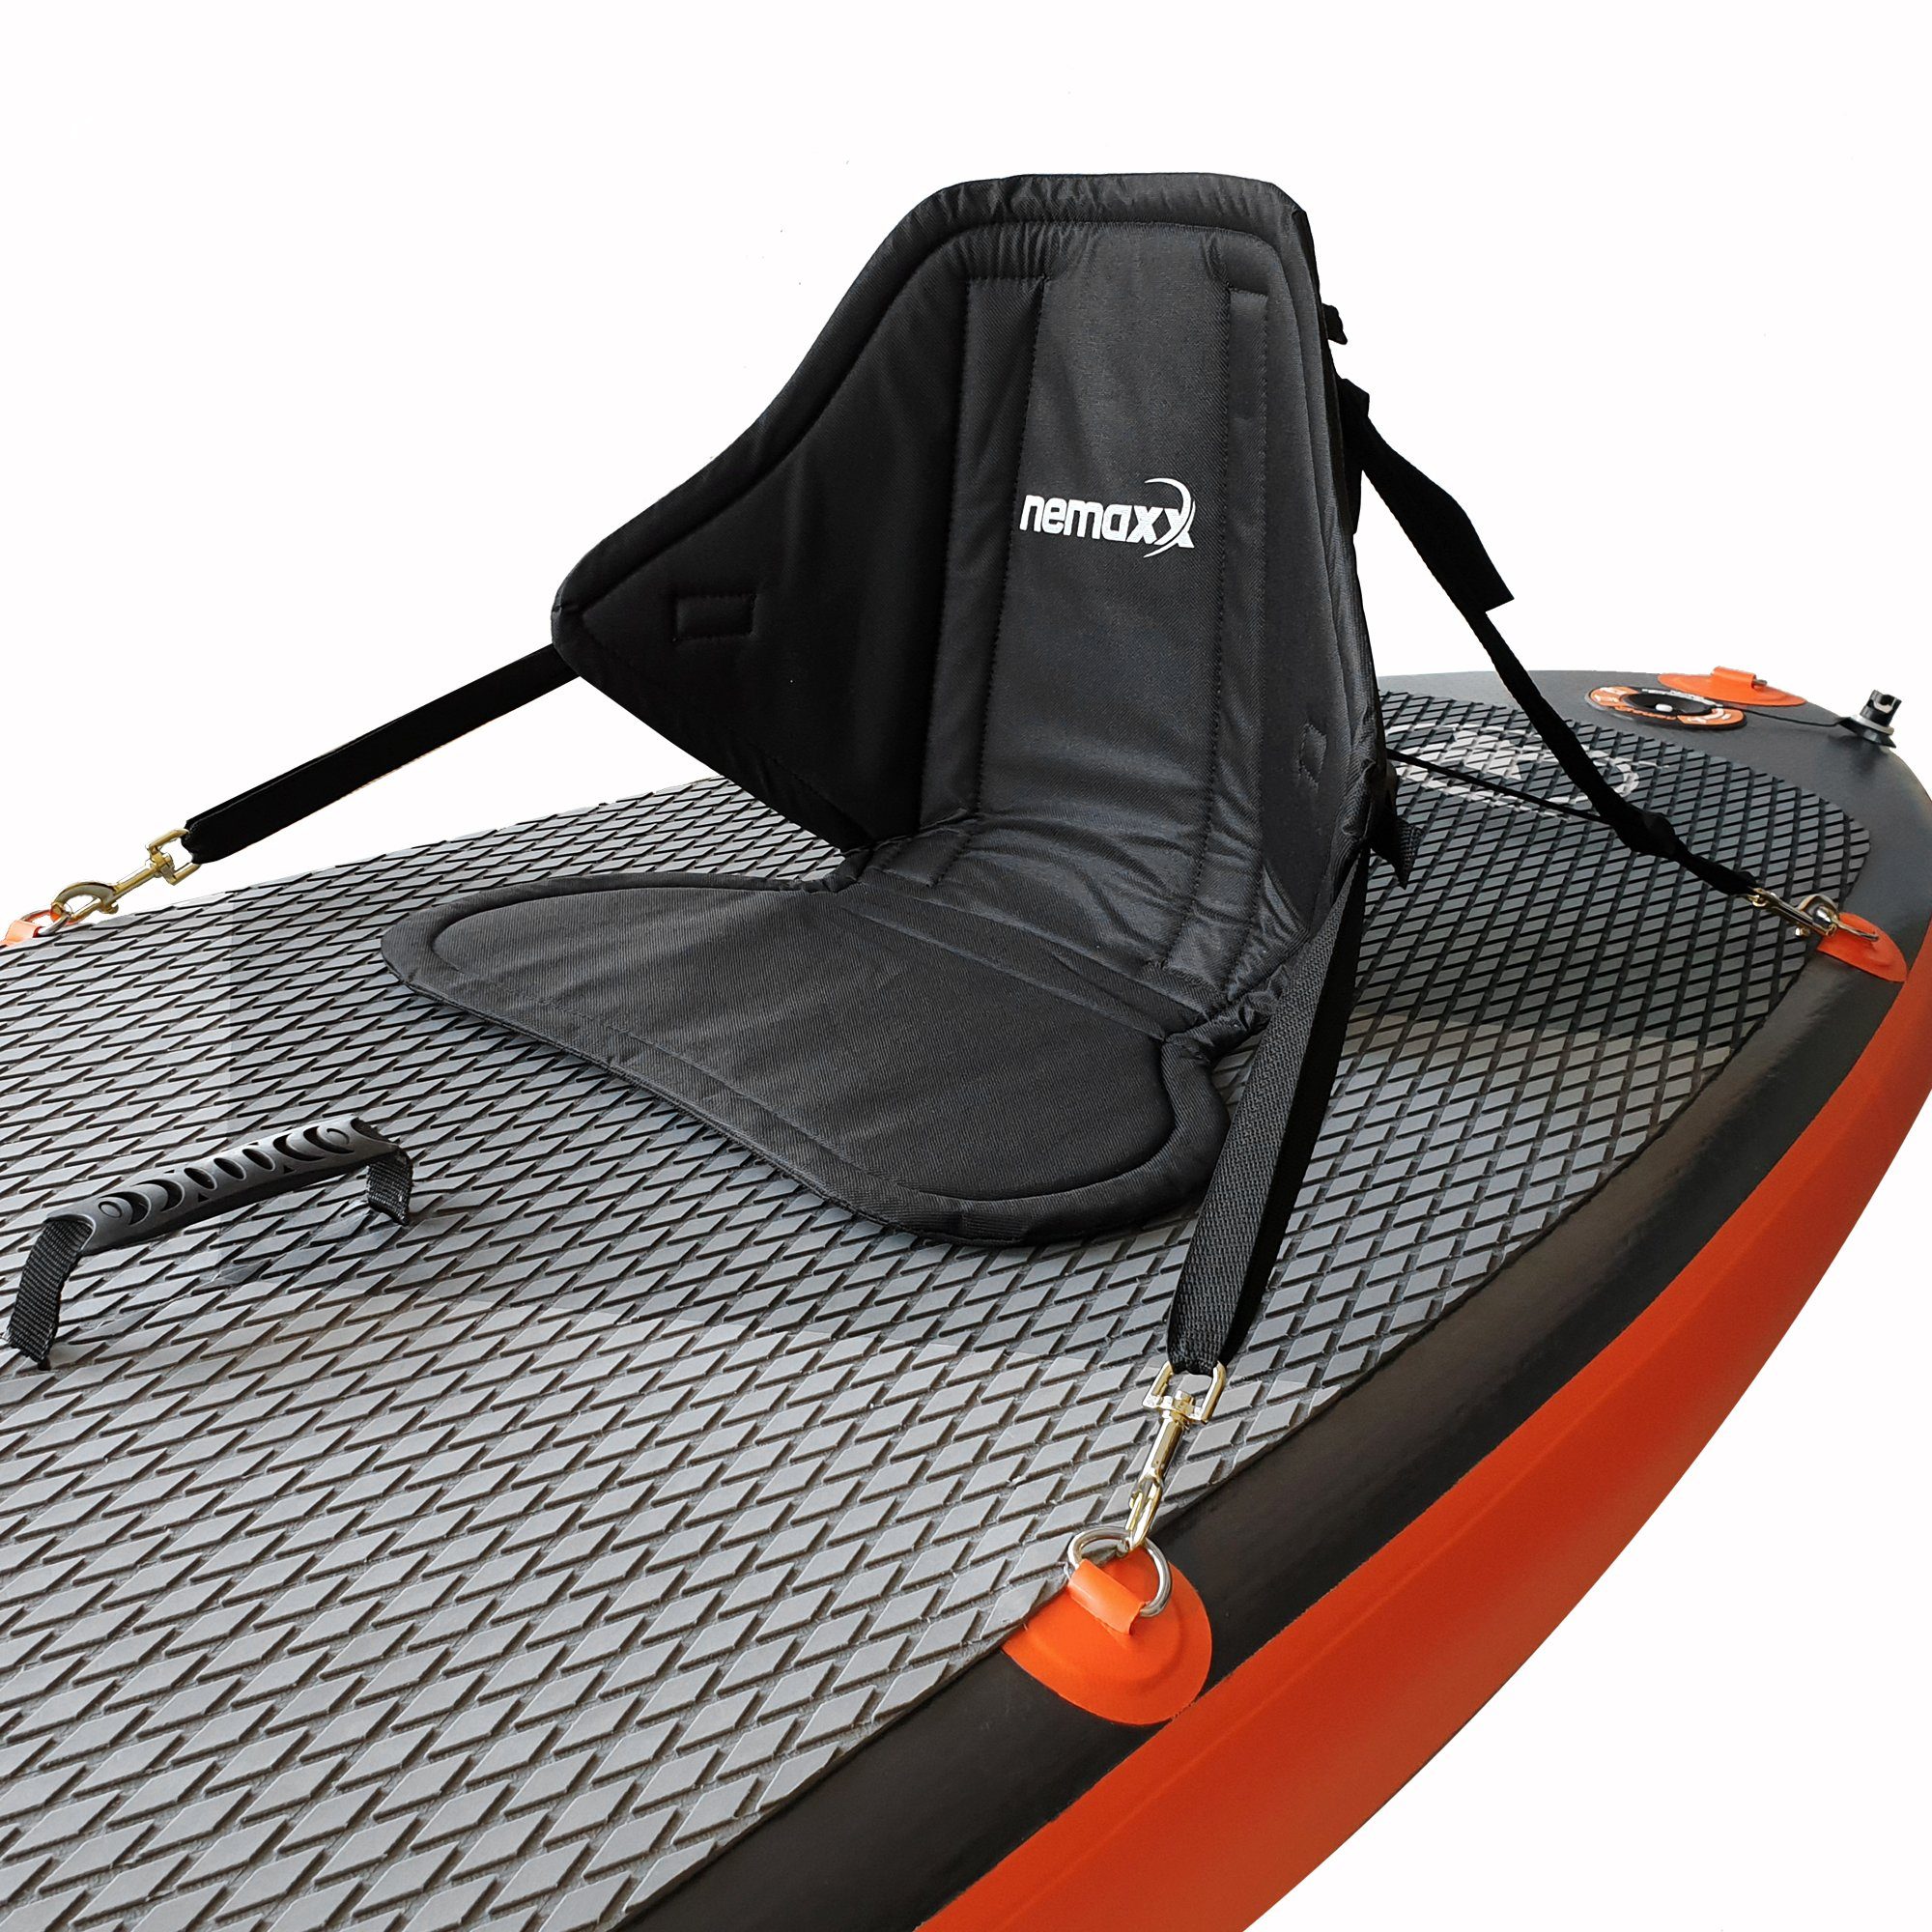 NEMAXX Inflatable SUP-Board, NEMAXX Komfort Sitz für SUP mit Sitz- und Rückenpolster Kissen - Stand Up Paddle Board Sitzauflage mit Sitztasche, Kajak- / Kanusitz - rutschfest, schwarz